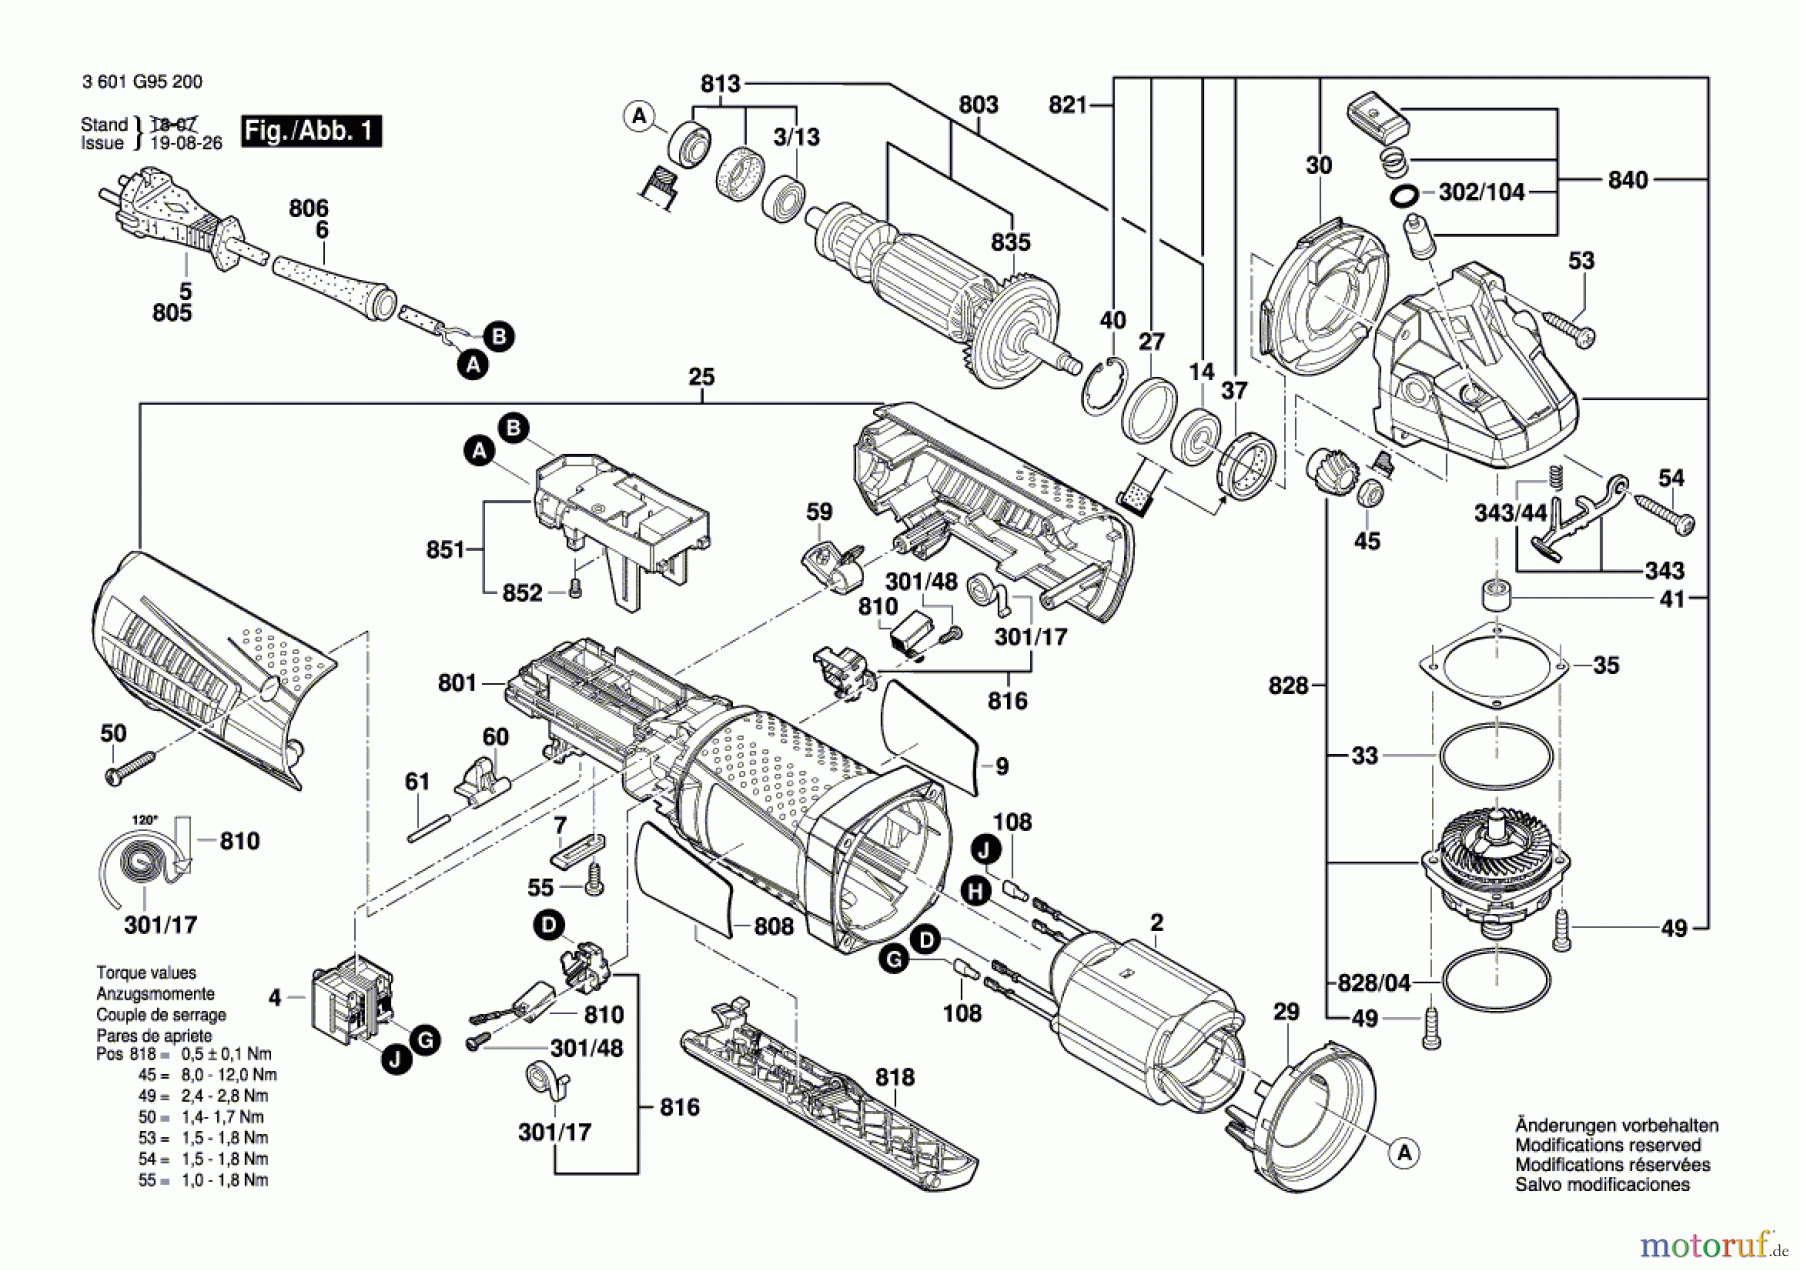  Bosch Werkzeug Winkelschleifer GWS 15-125 CIP Seite 1